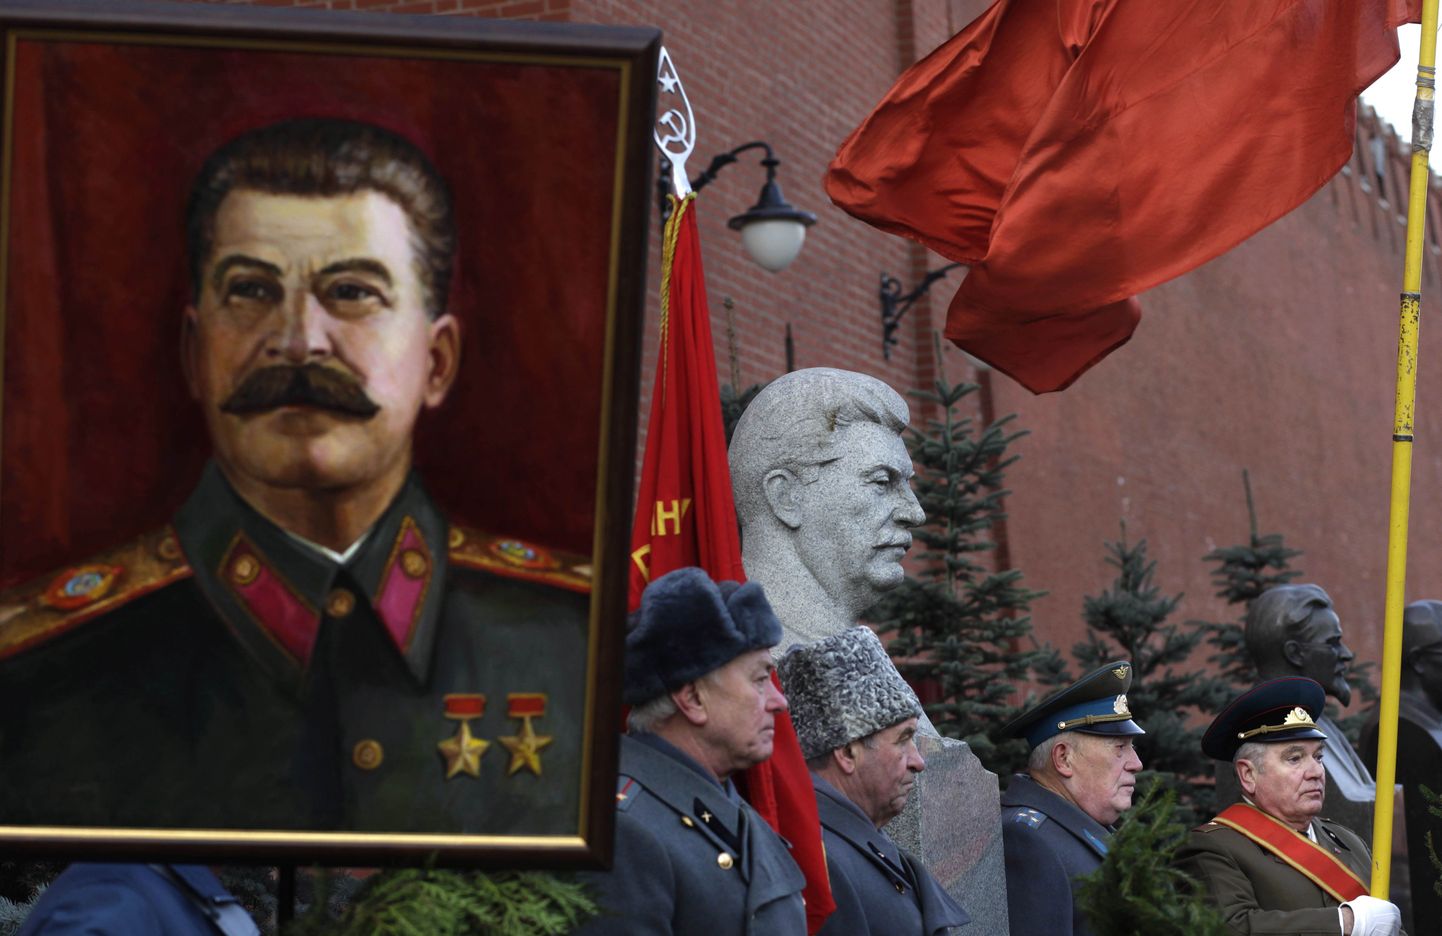 Venemaal on jätkuvalt palju neid, kes Stalinit hoolimata tema tegudest austavad.